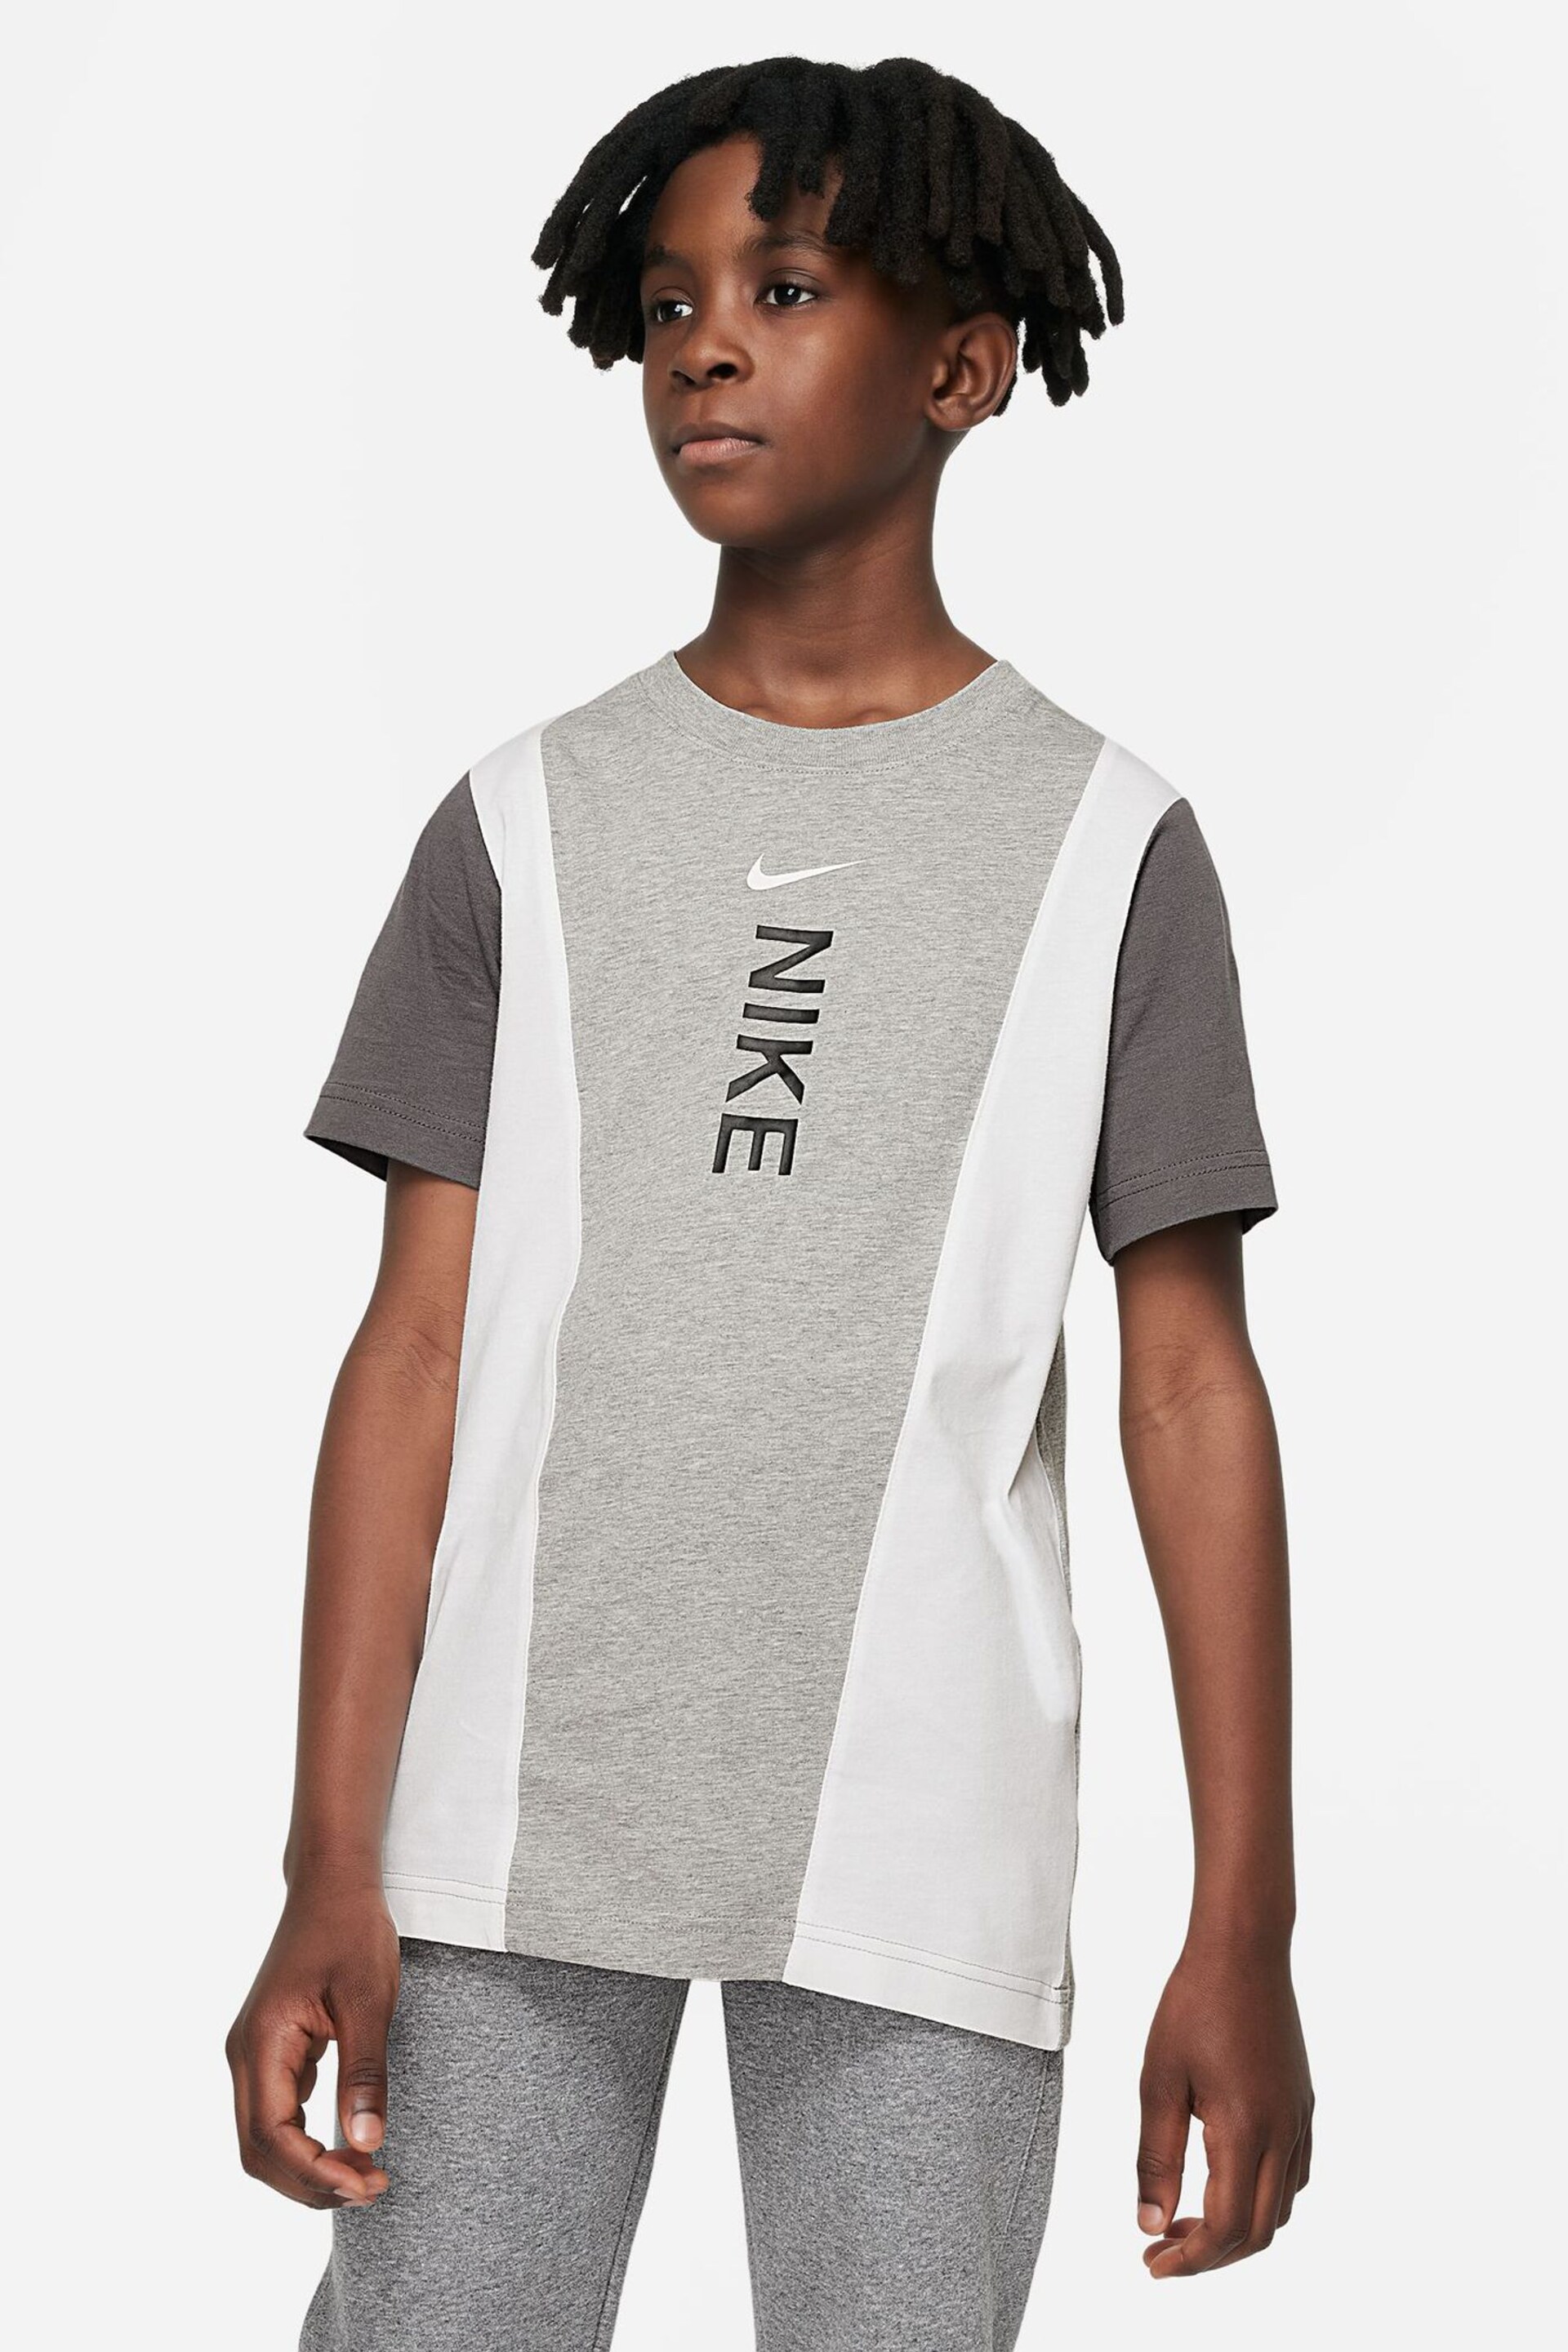 Nike Grey Hybrid T-Shirt - Image 1 of 4